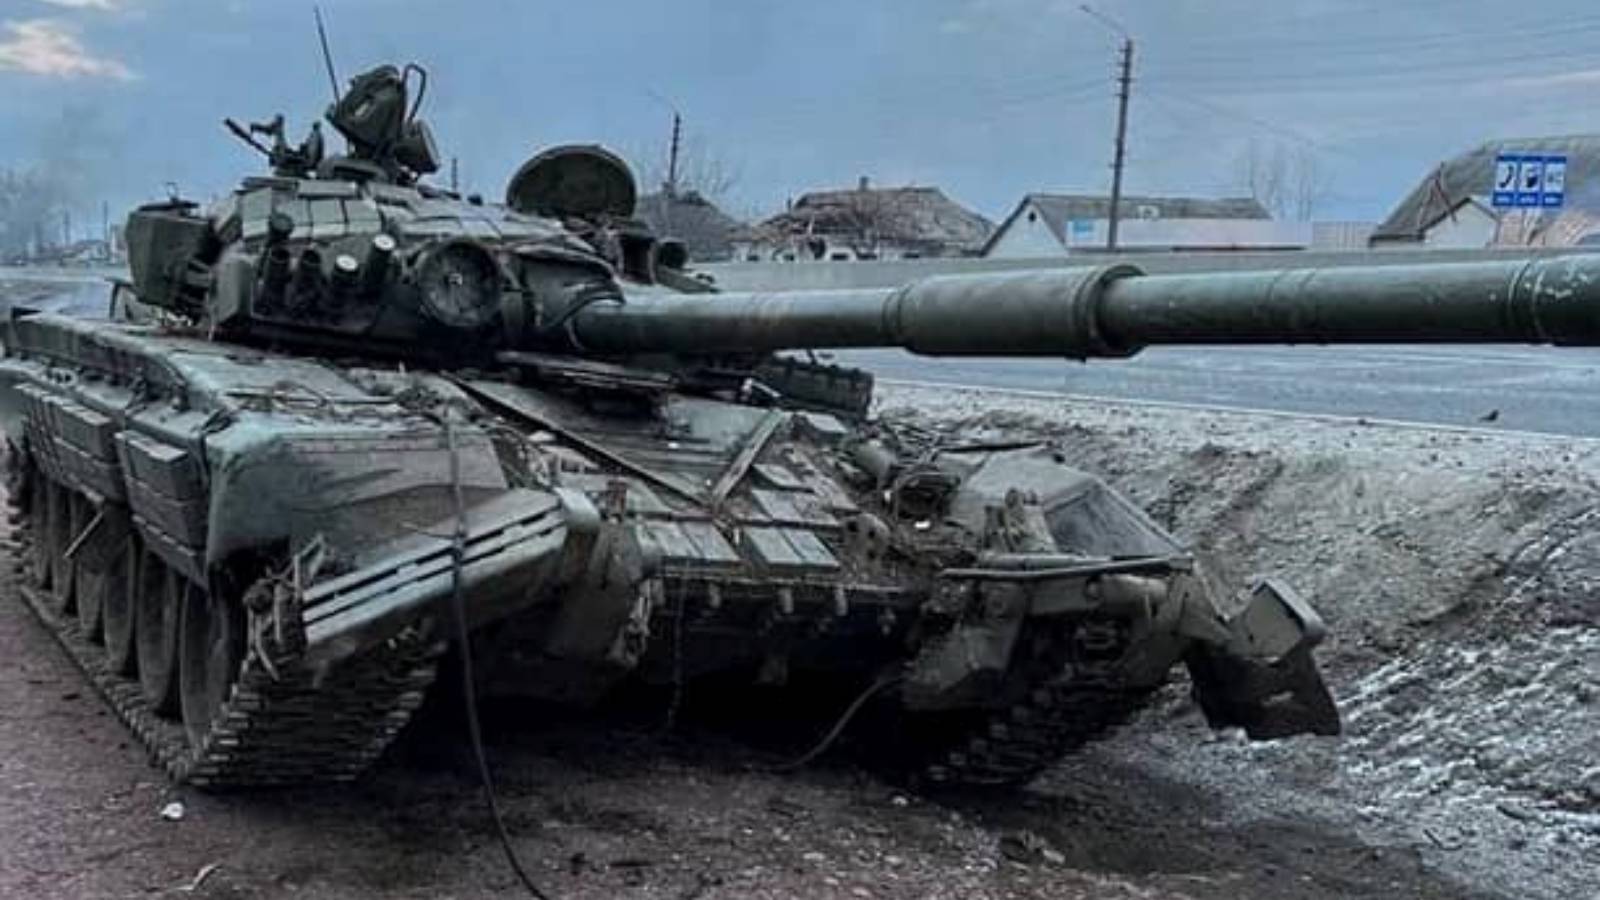 WIDEO Duży konwój rosyjskich czołgów zaatakowany przez ukraińską artylerię